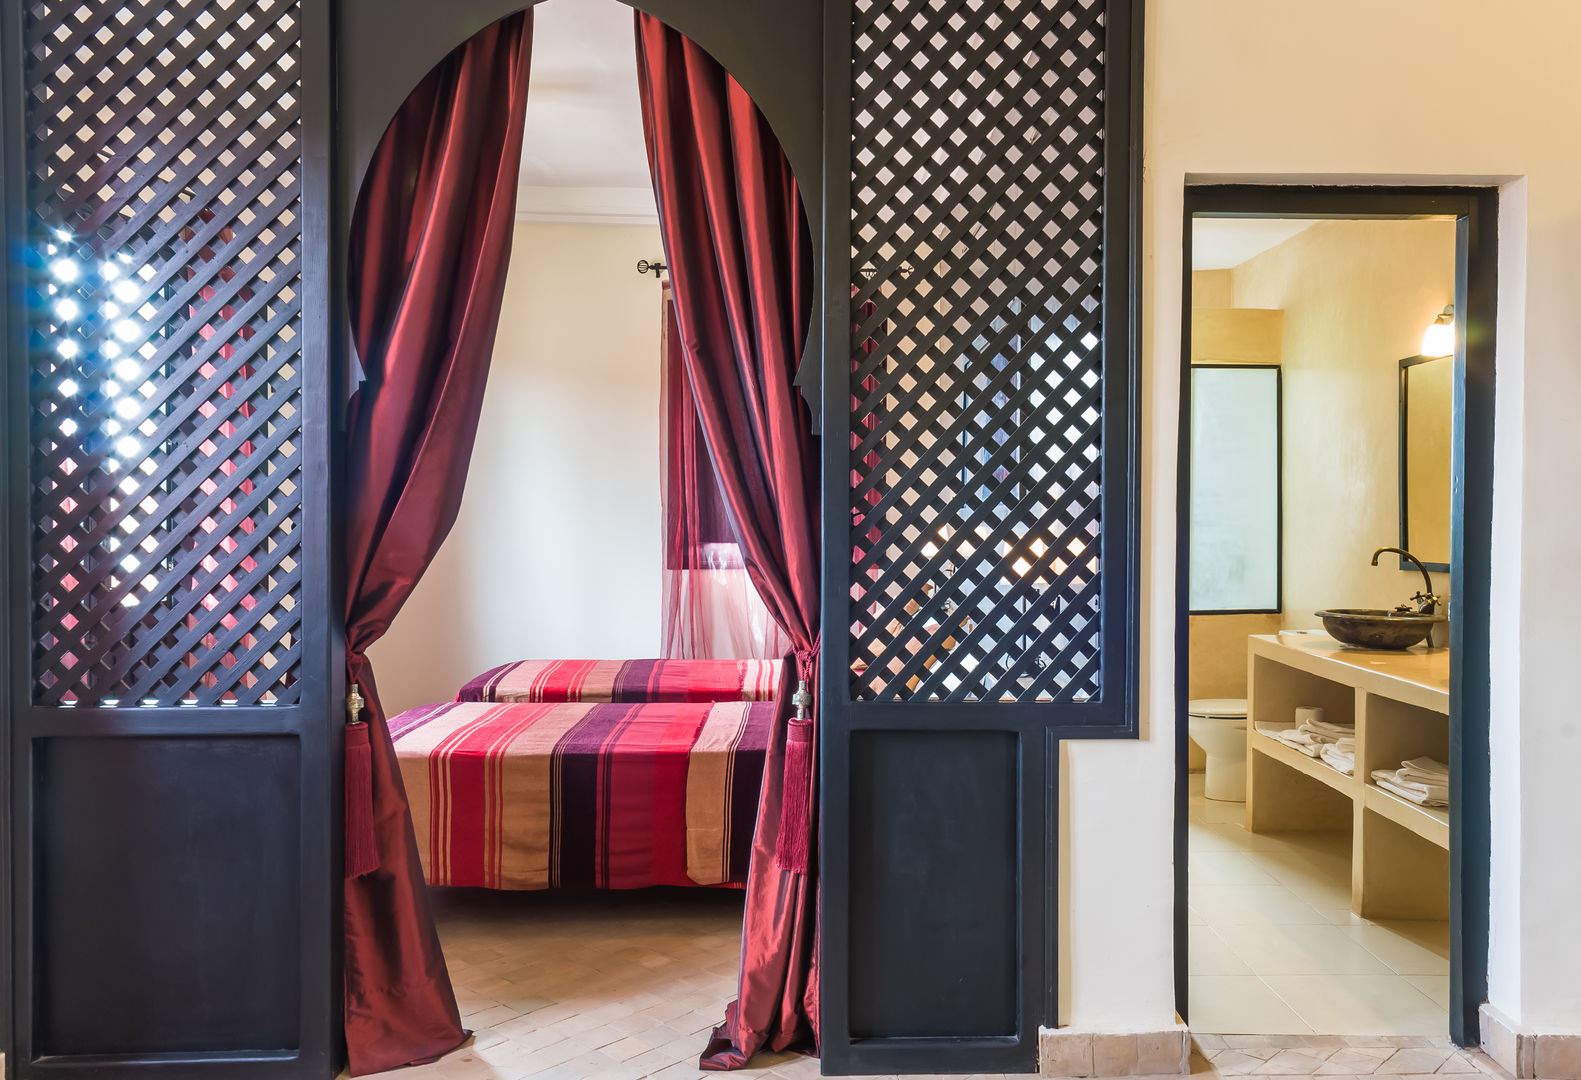 Hotel en Marruecos, Space Maker Studio Space Maker Studio 商業空間